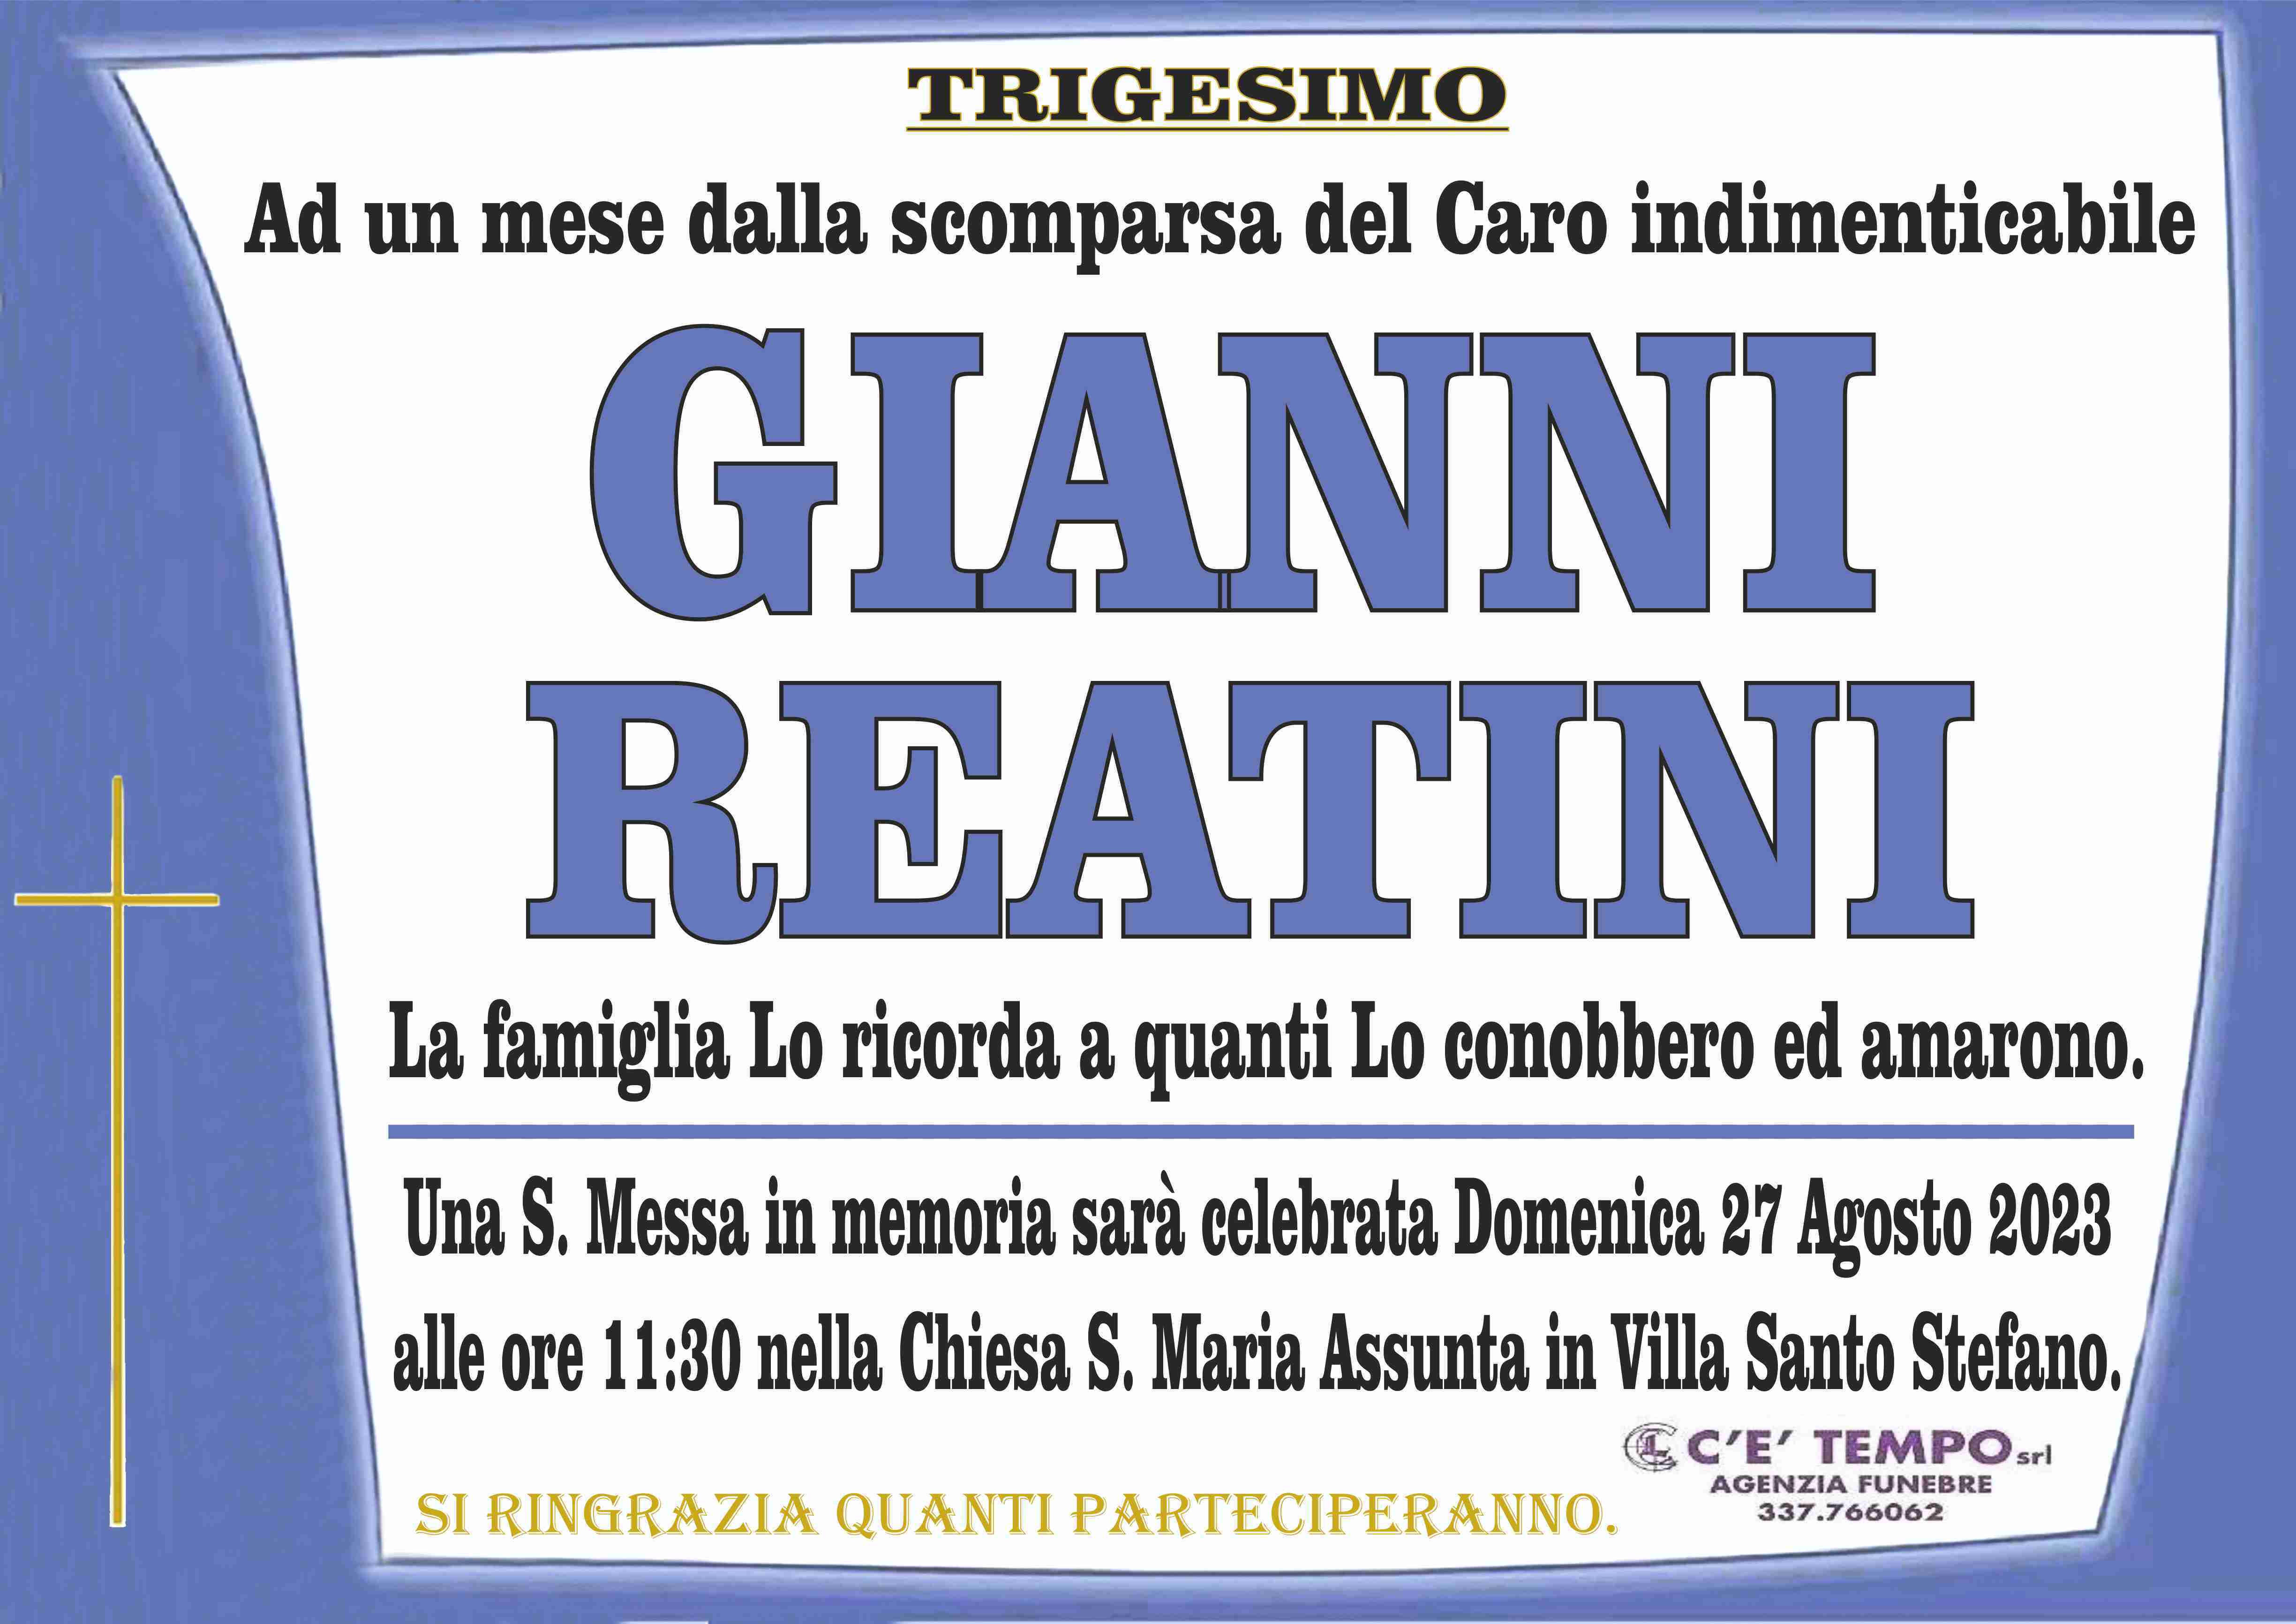 Gianni Reatini